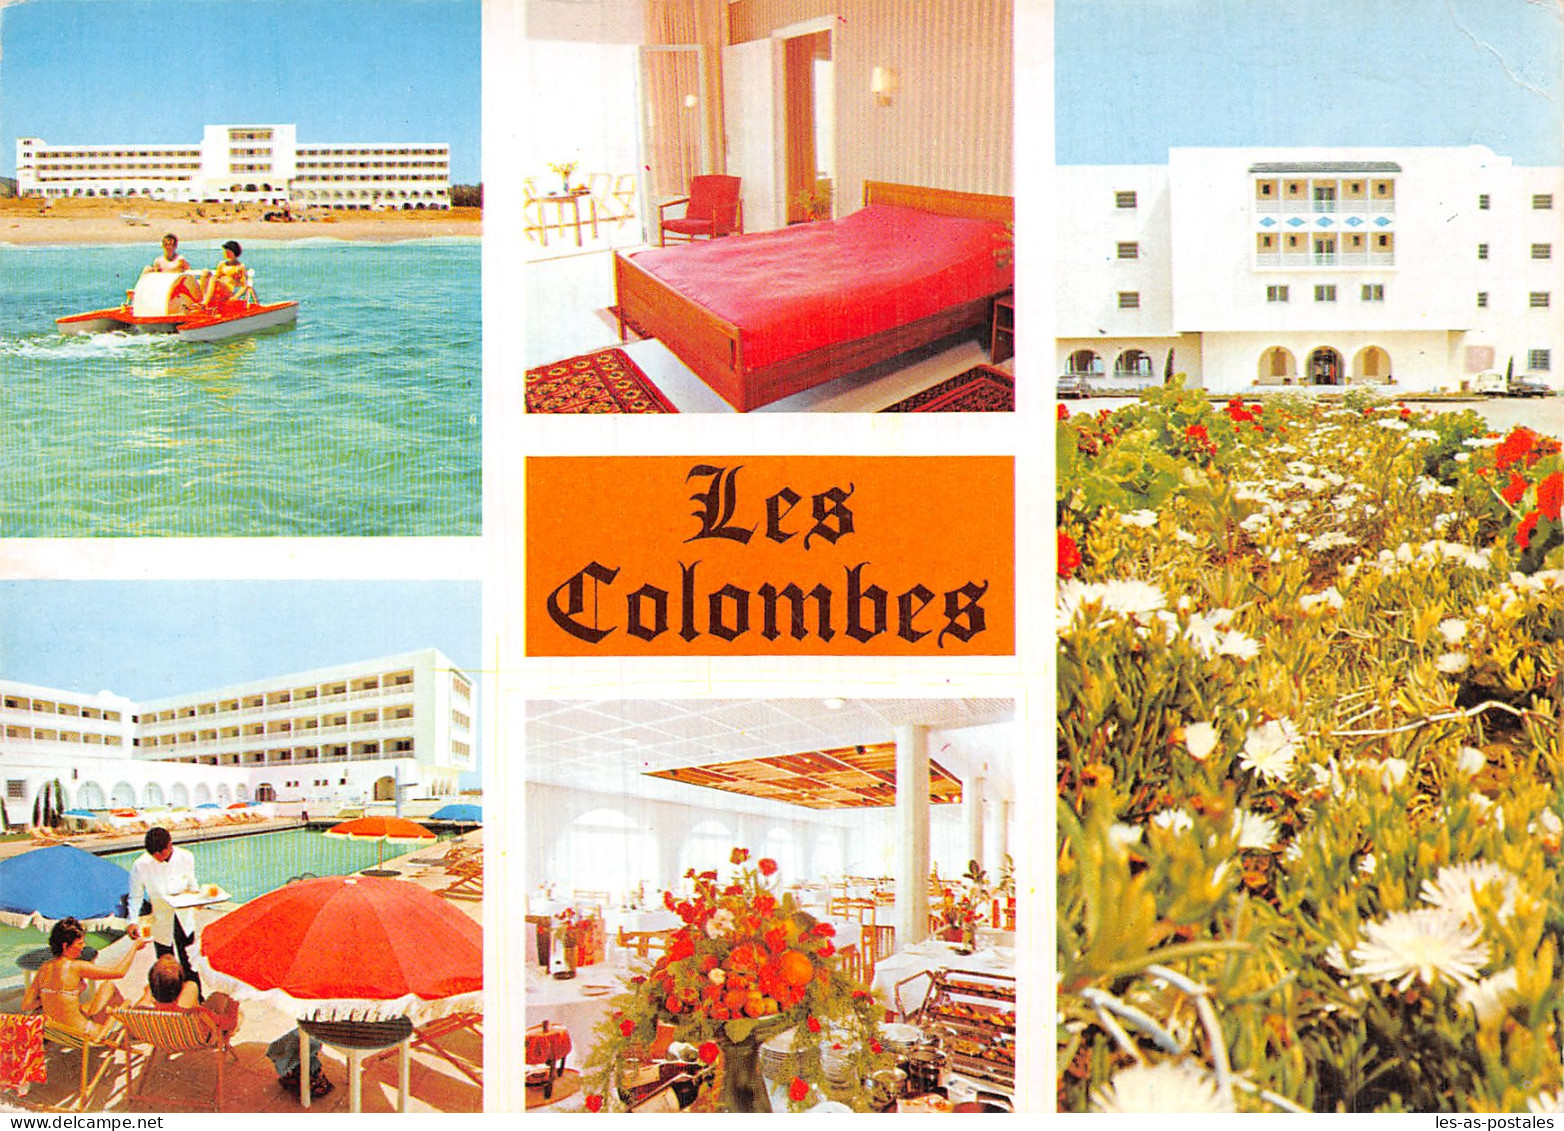 TUNISIE HAMMAMET HOTEL LES COLOMBES - Tunisia